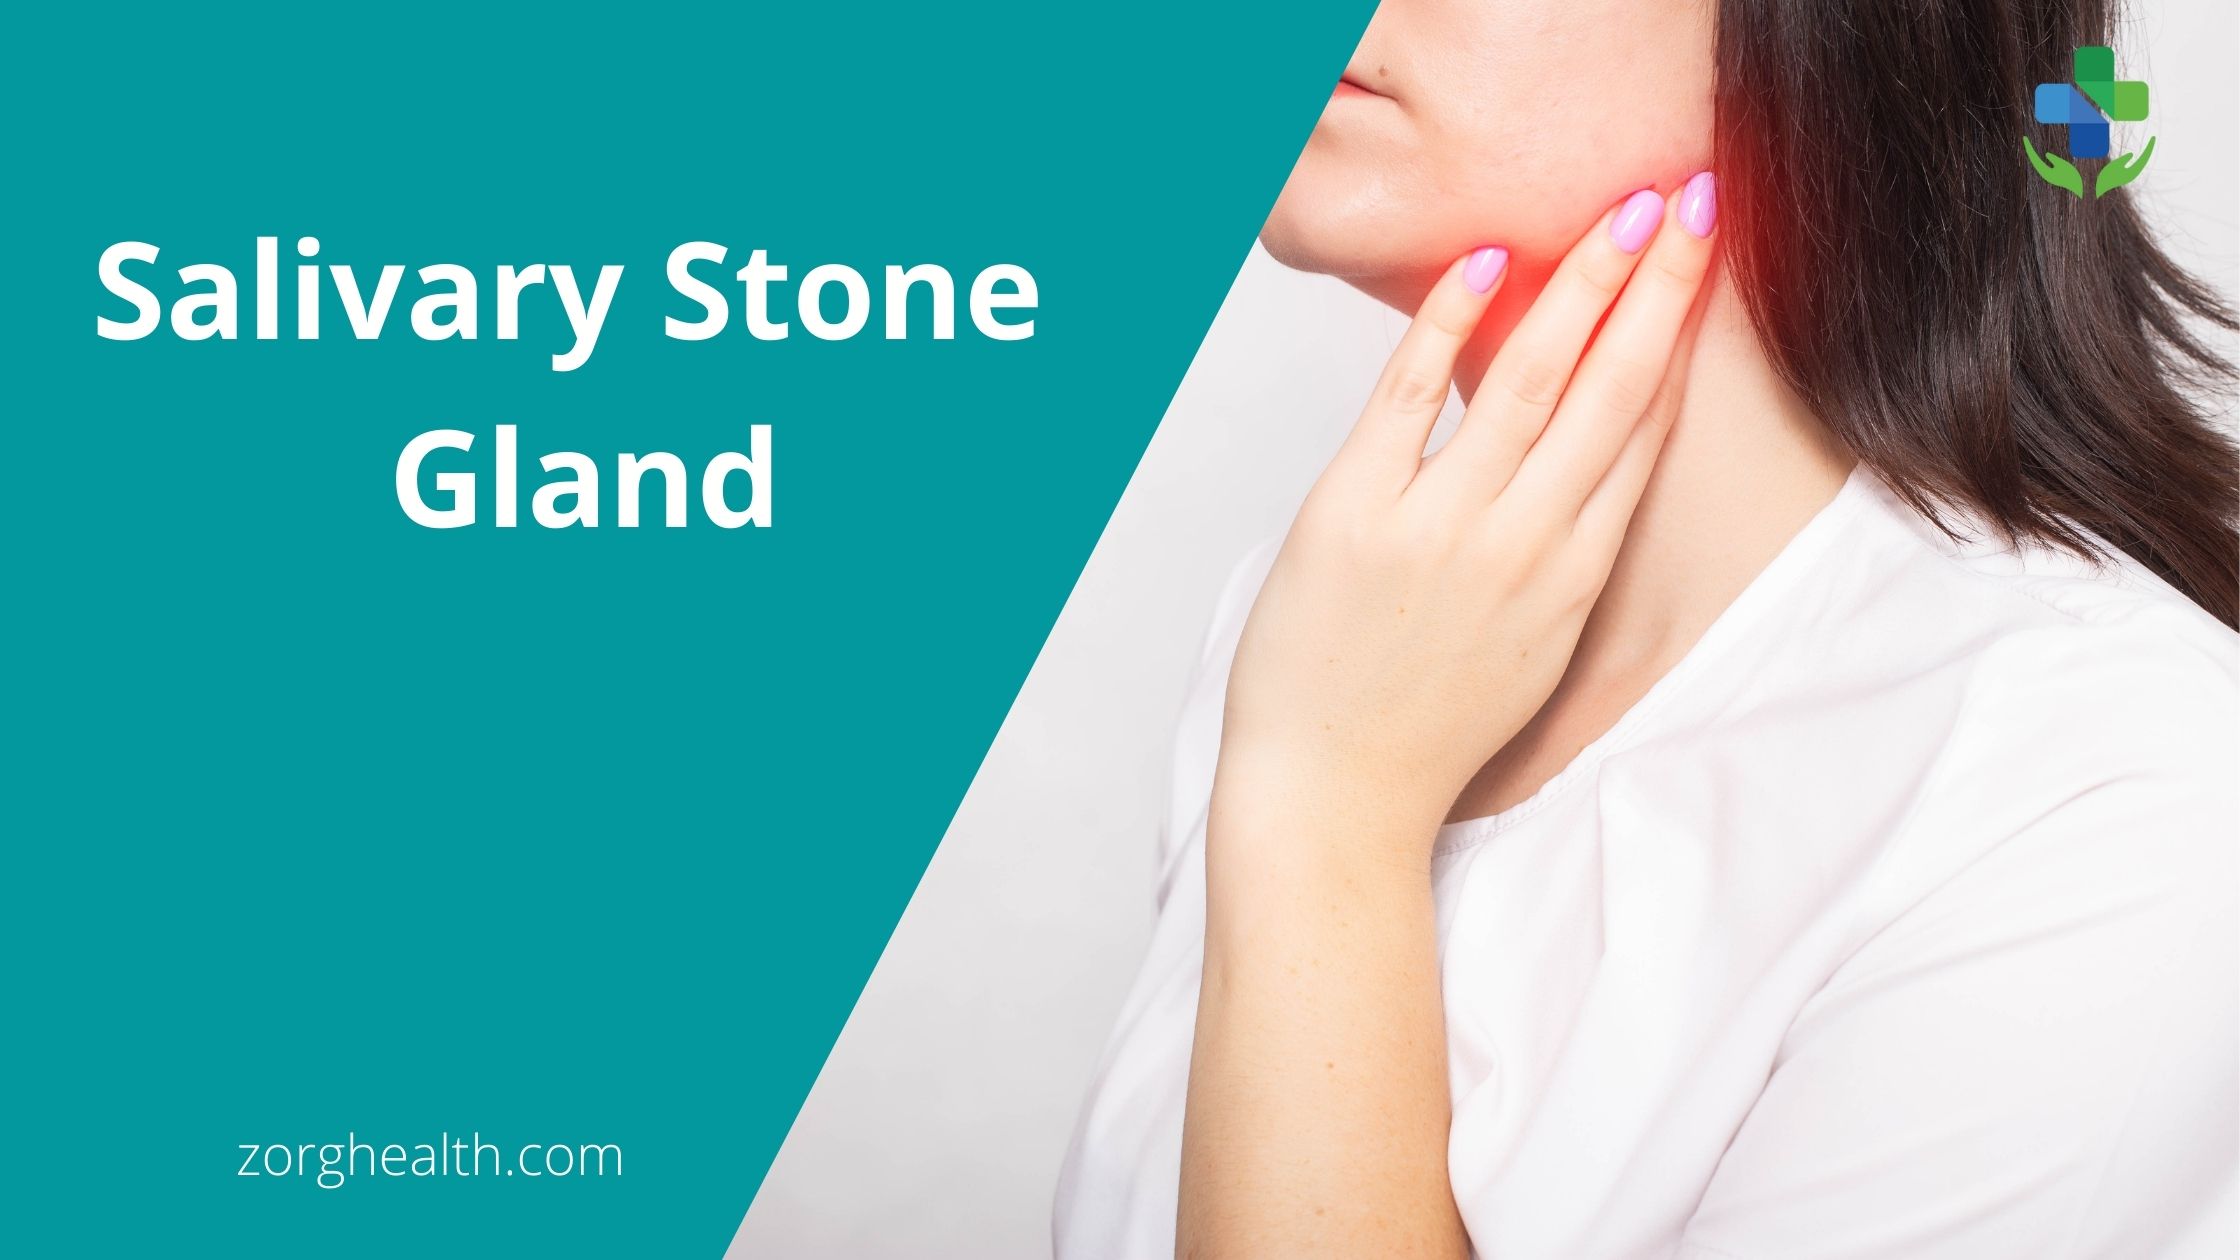 Salivary stone gland